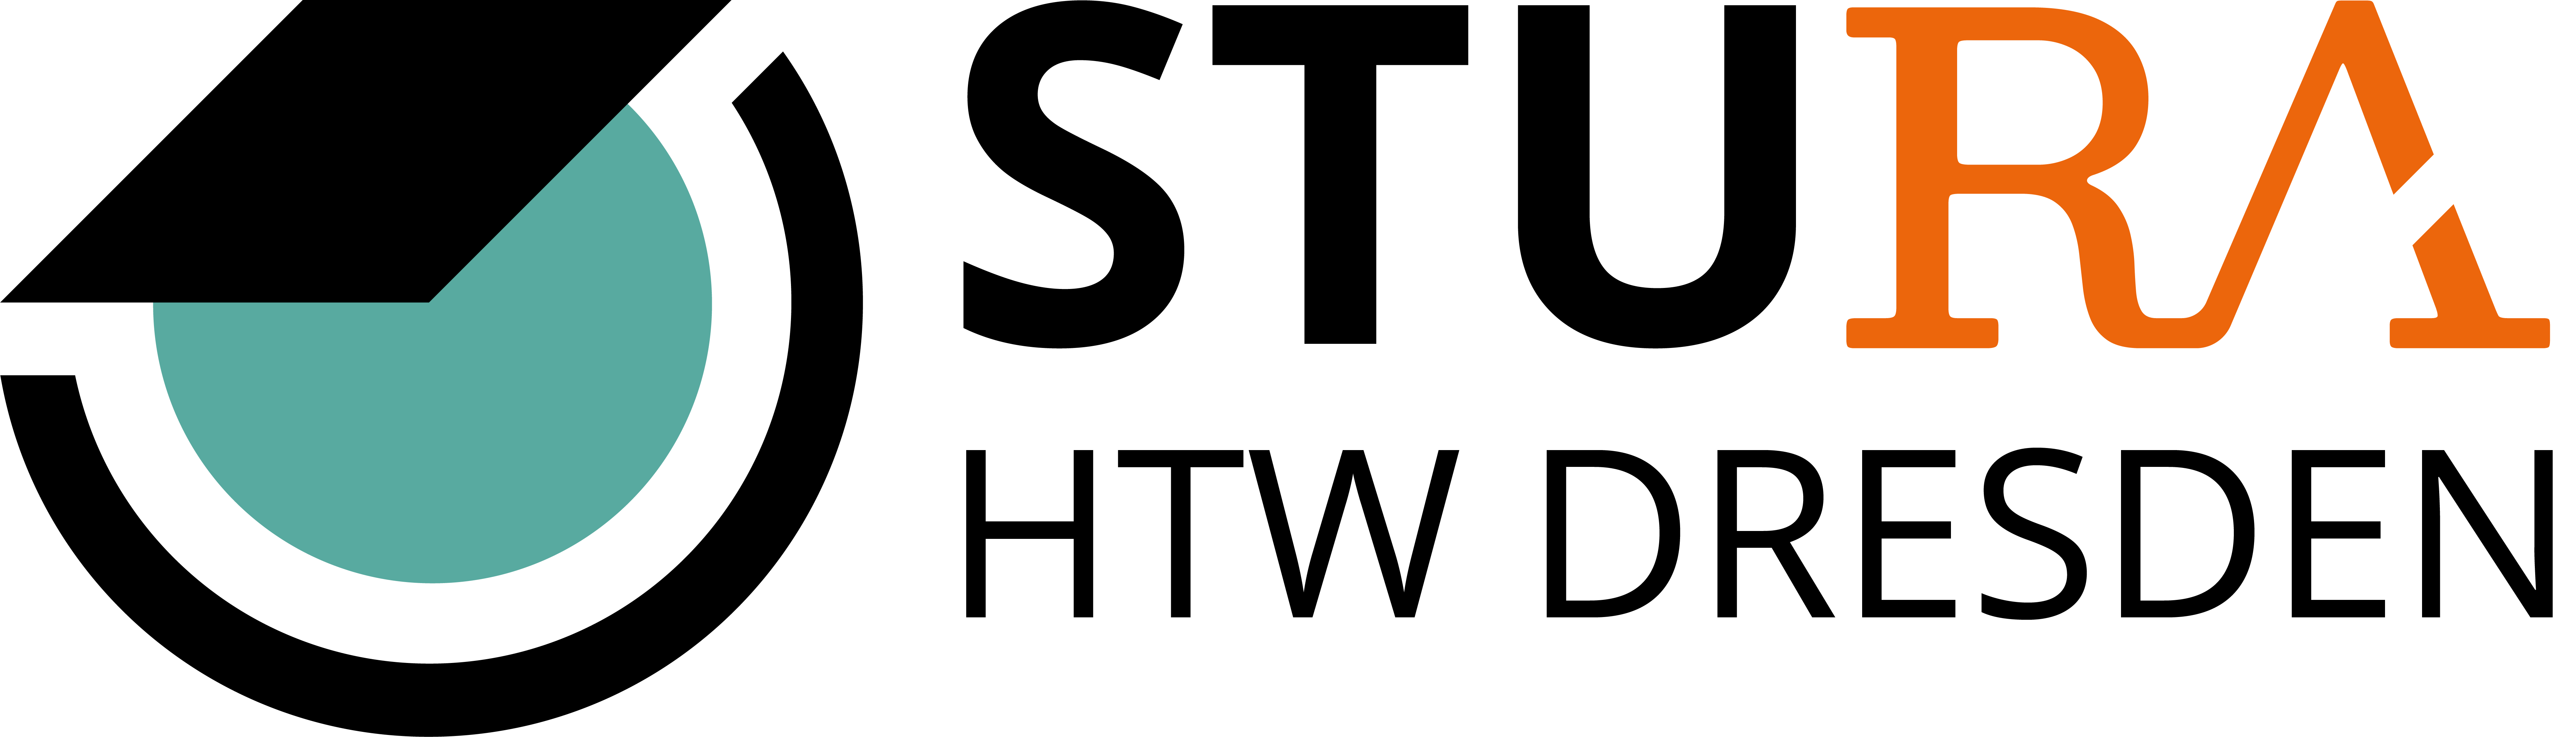 Logo, mit Schriftzug "HTW Dresden", bunt (.png)